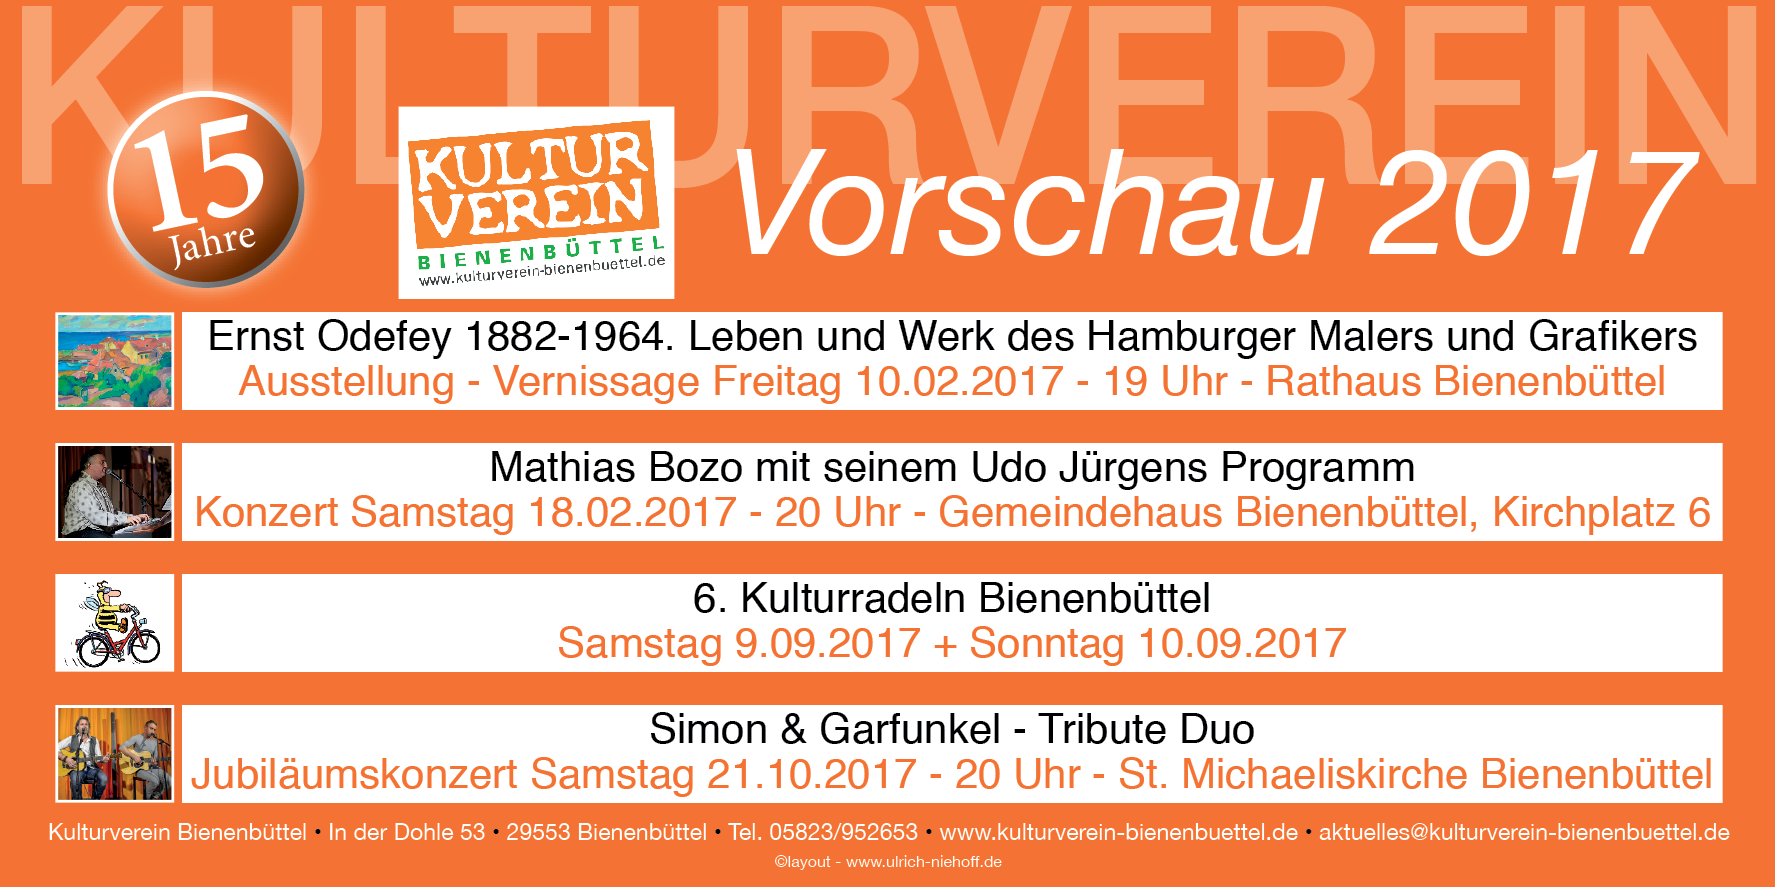 15 Jahre Kulturverein – Vorschau 2017